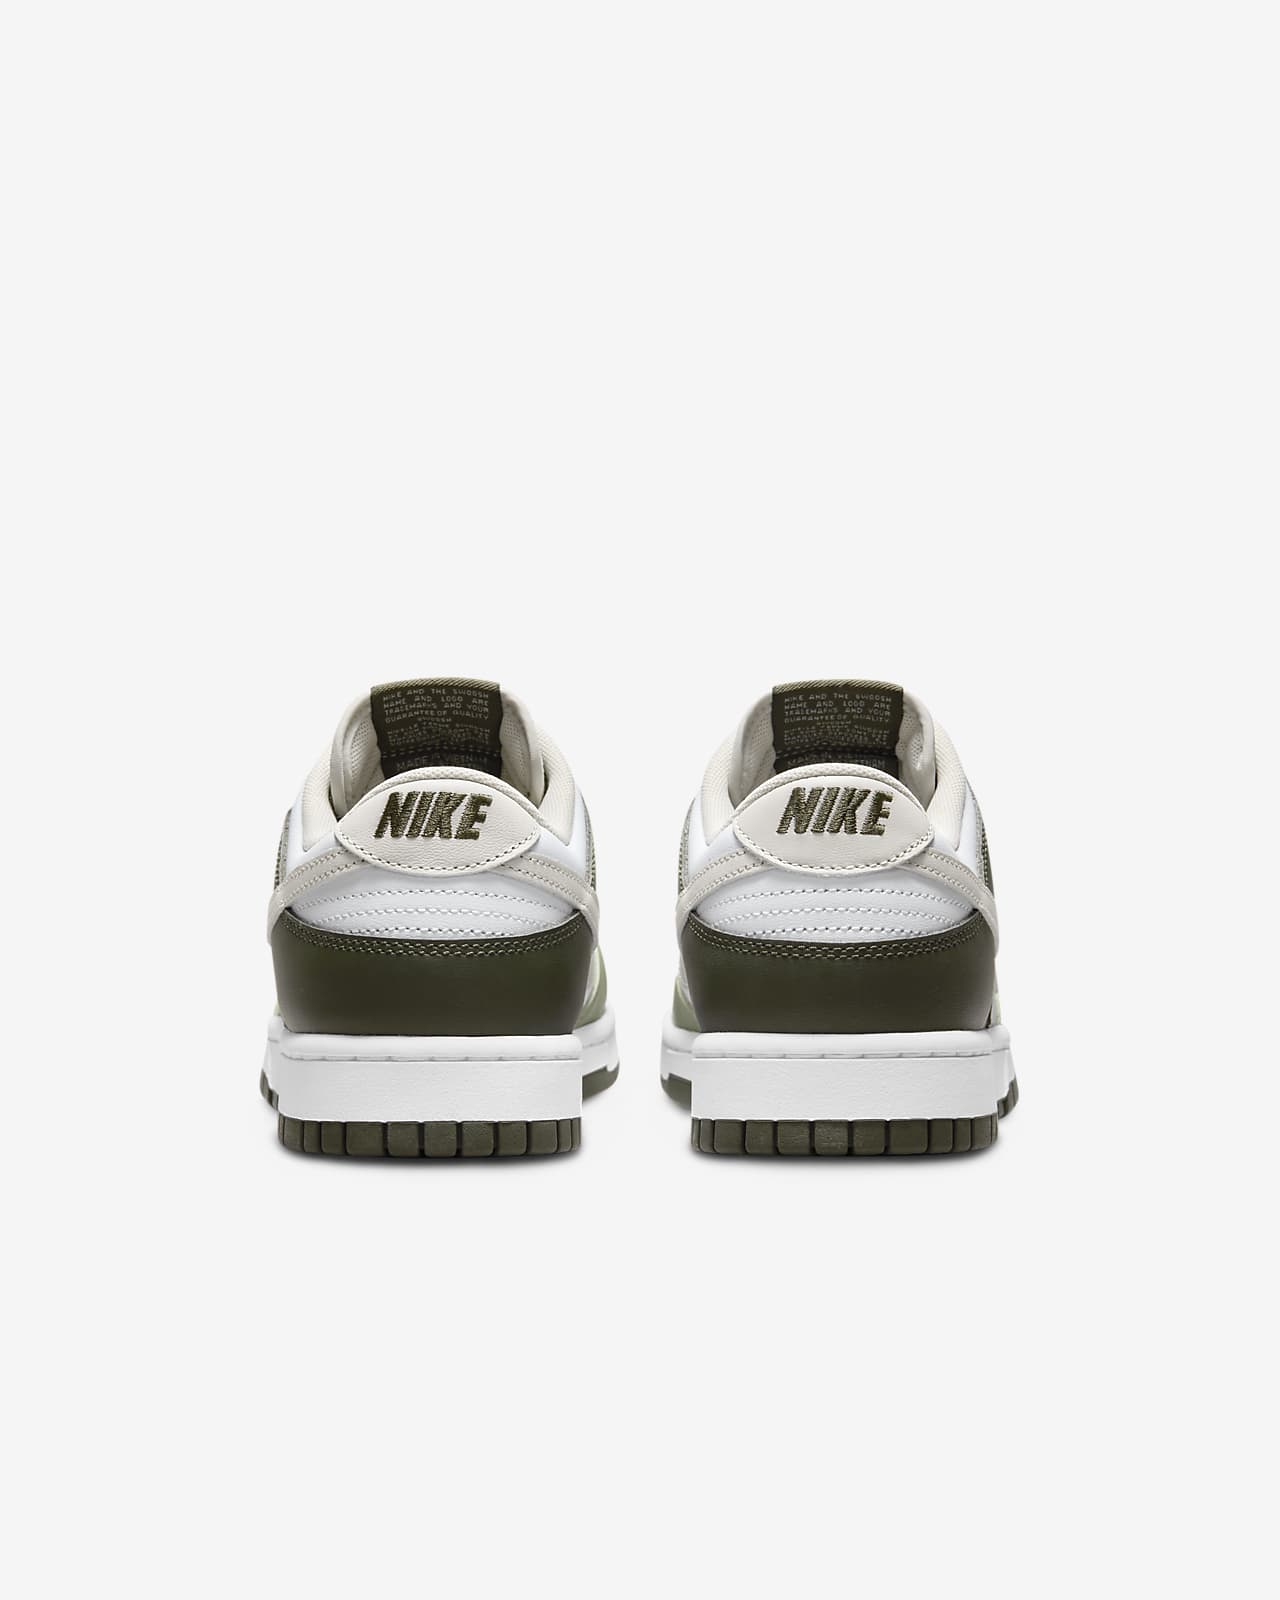 Nike Dunk Low Light Bone - Le Site de la Sneaker